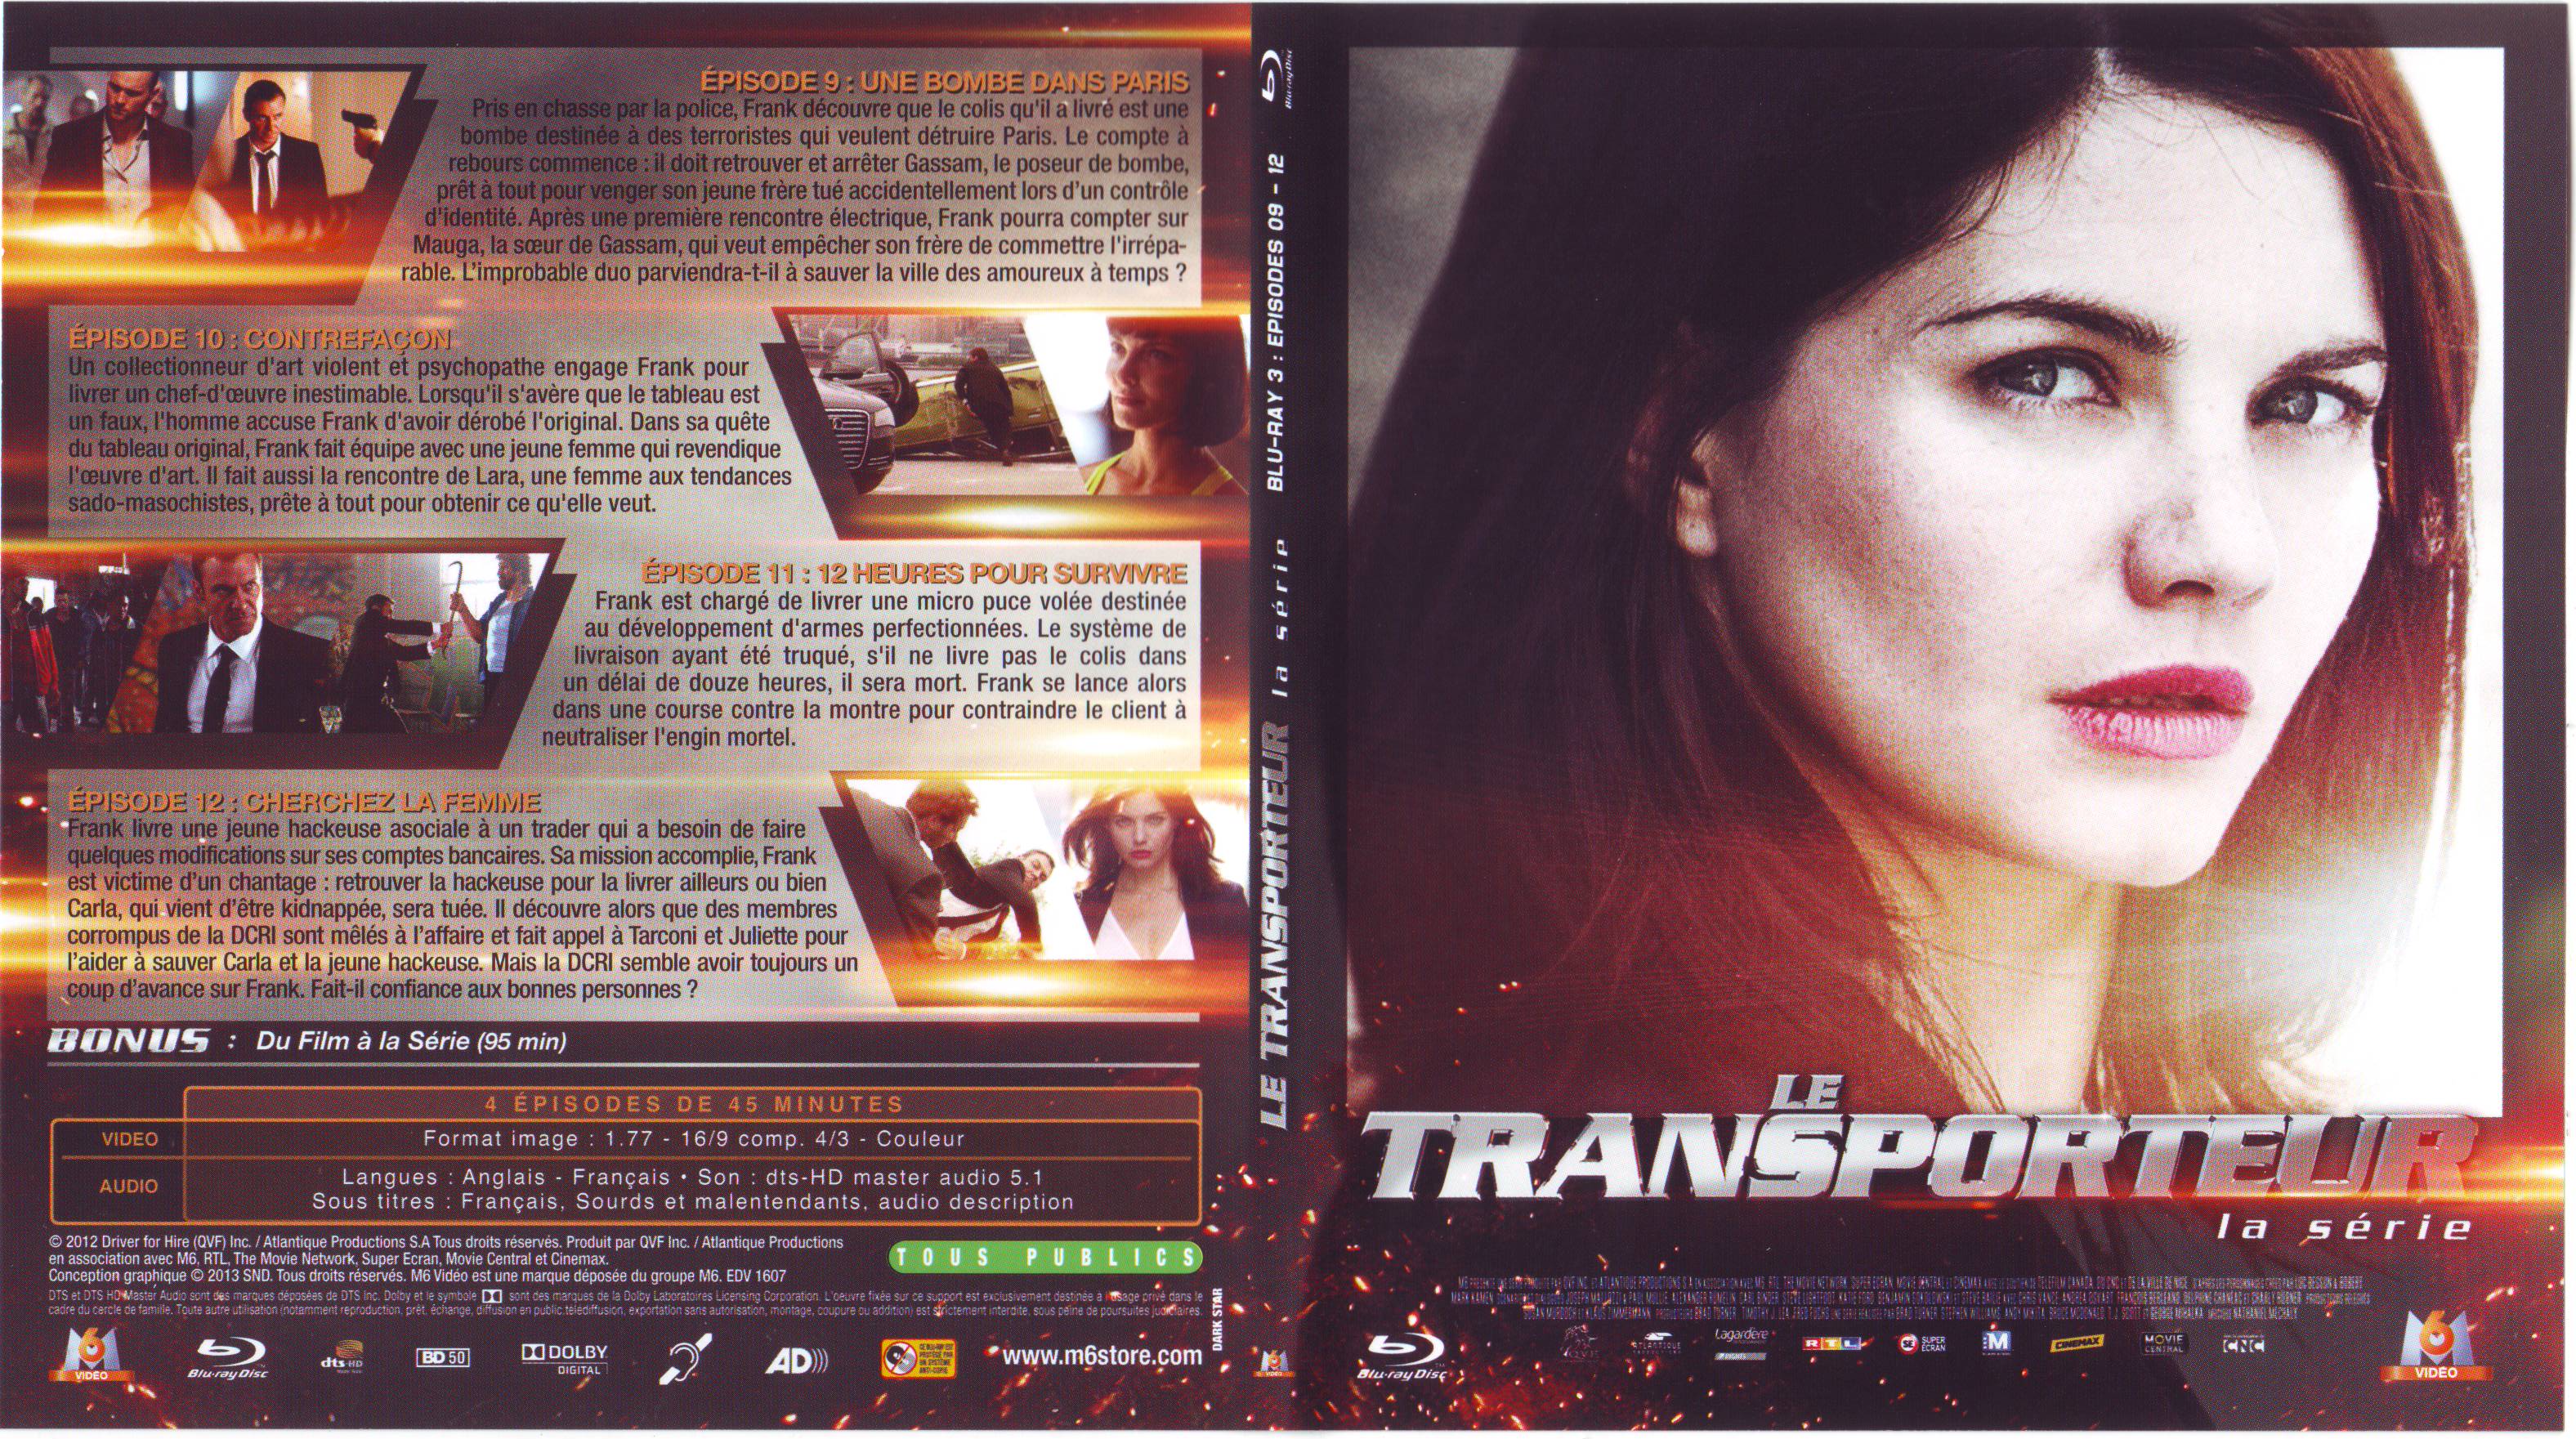 Jaquette DVD Le Transporteur la srie Saison 1 DISC 3 (BLU-RAY)